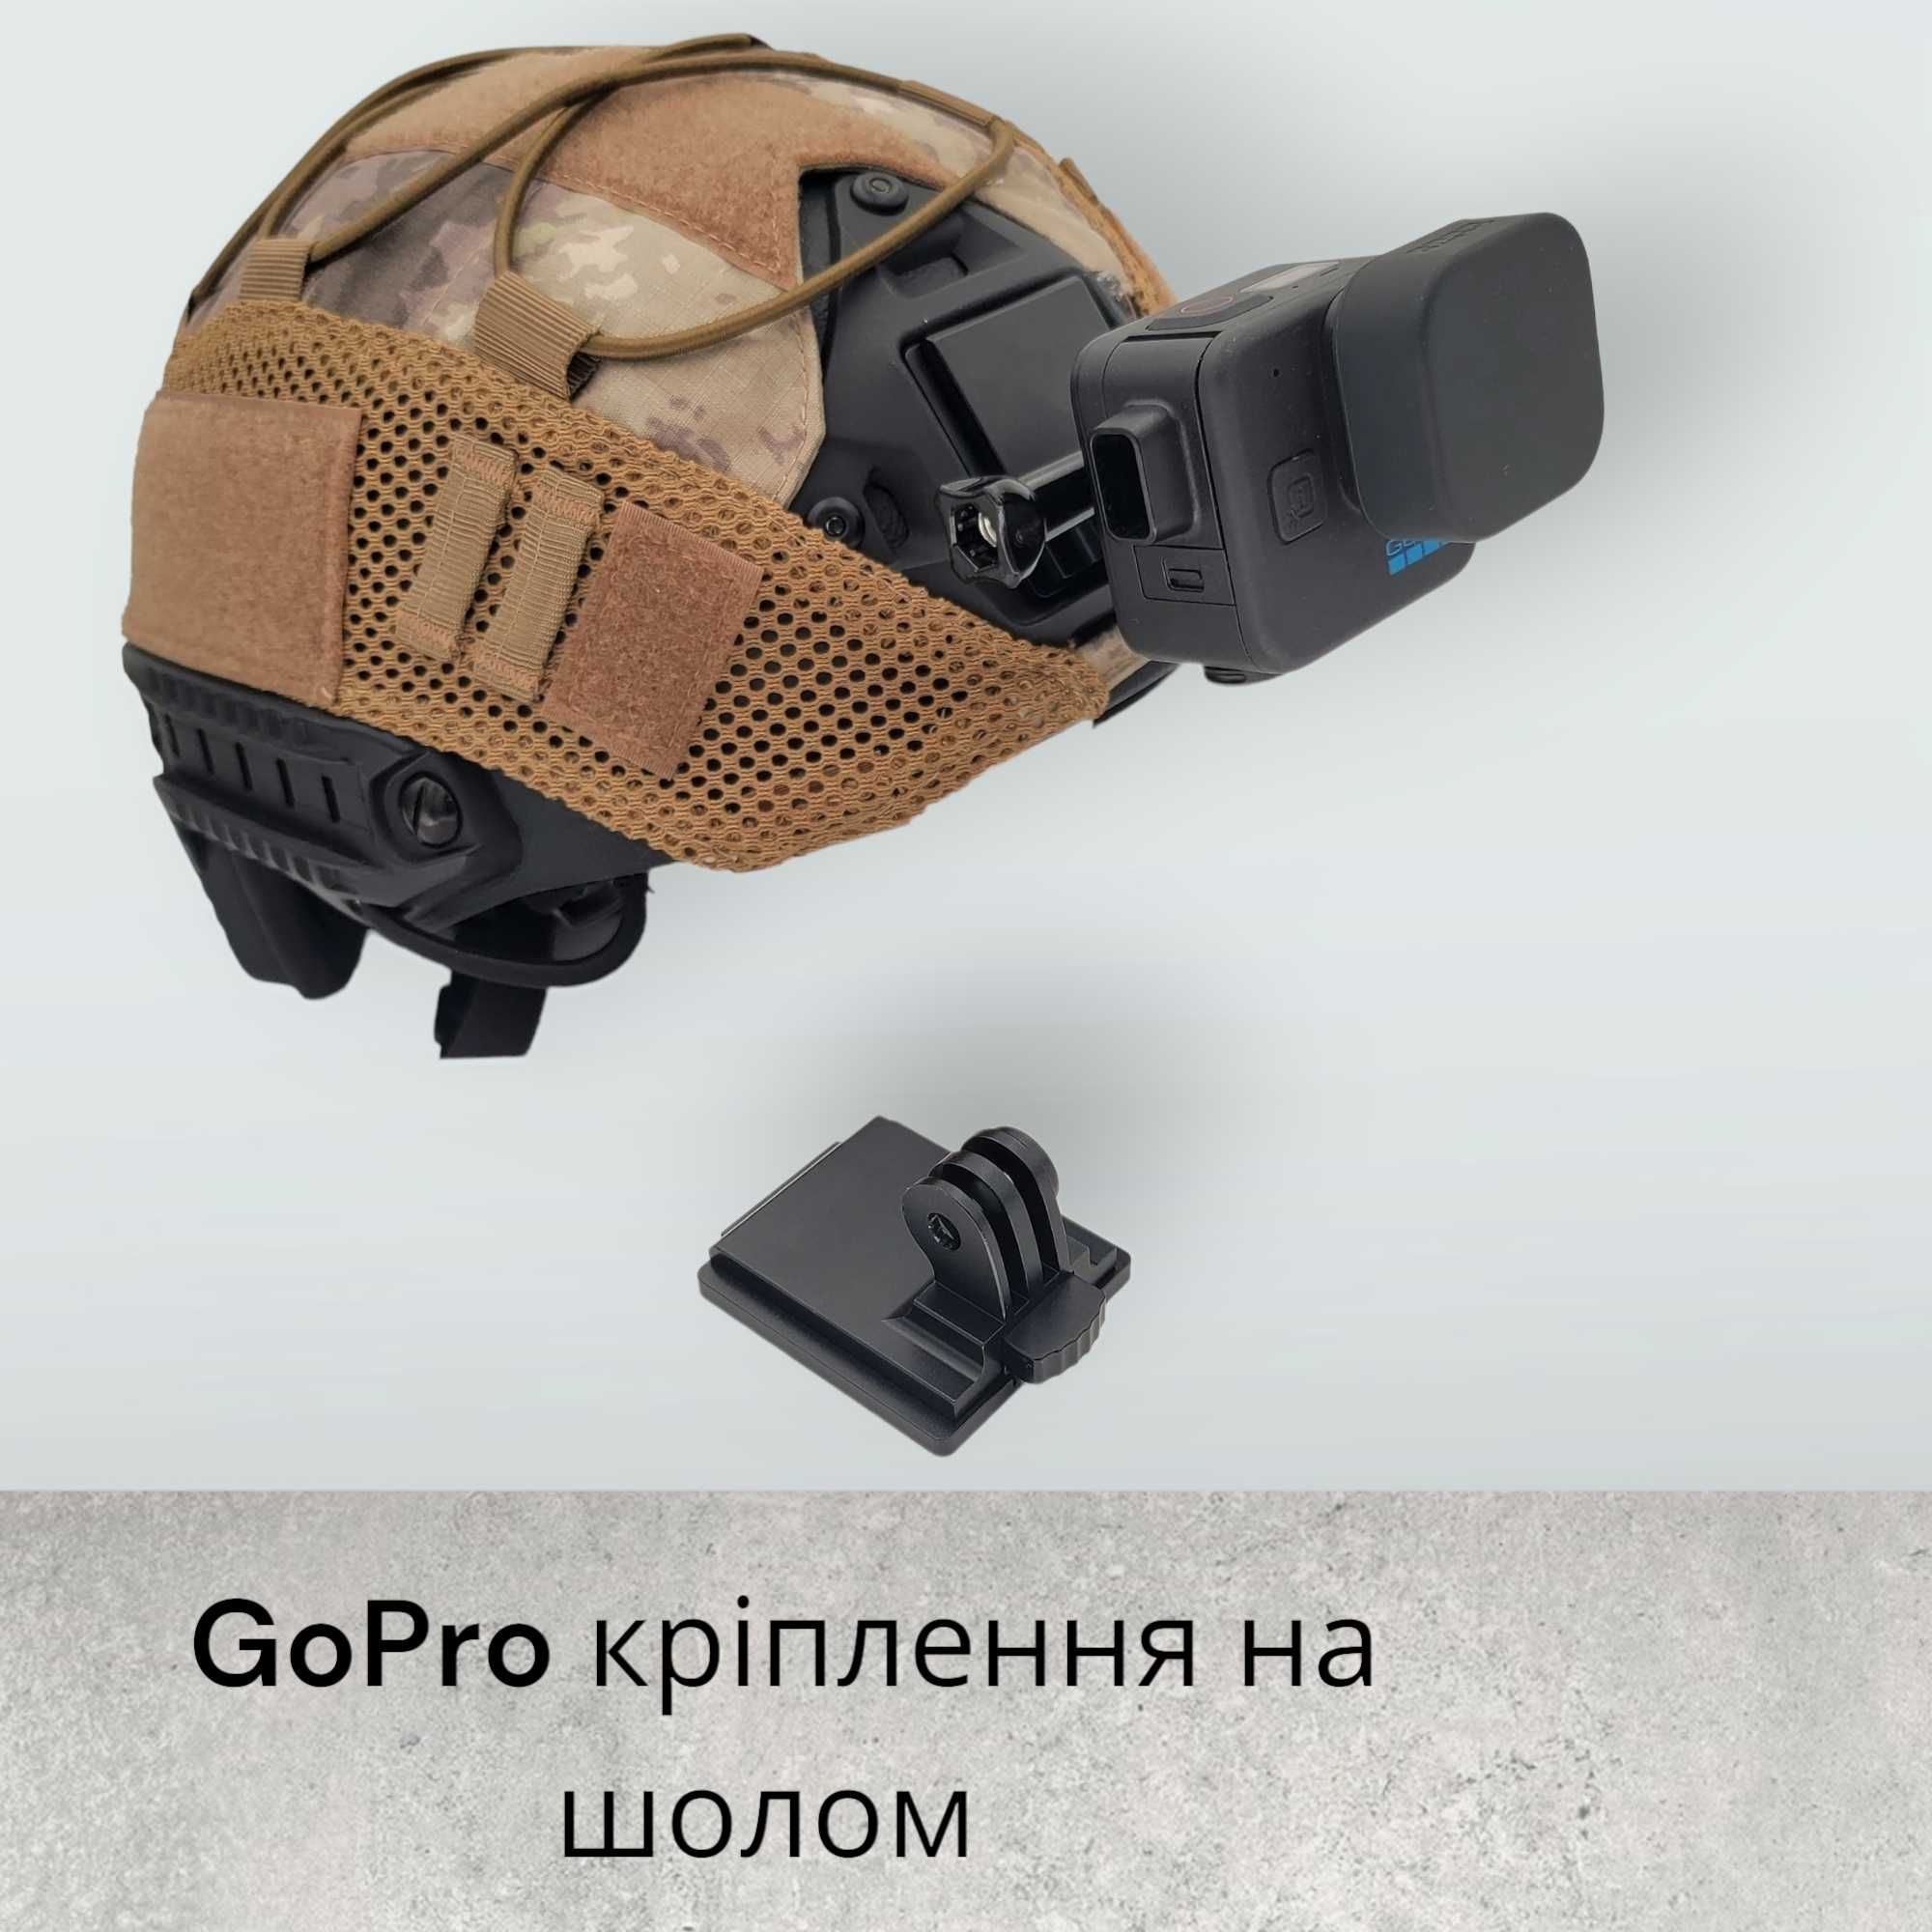 NVG кріплення для GoPro на військовий шолом з болтом